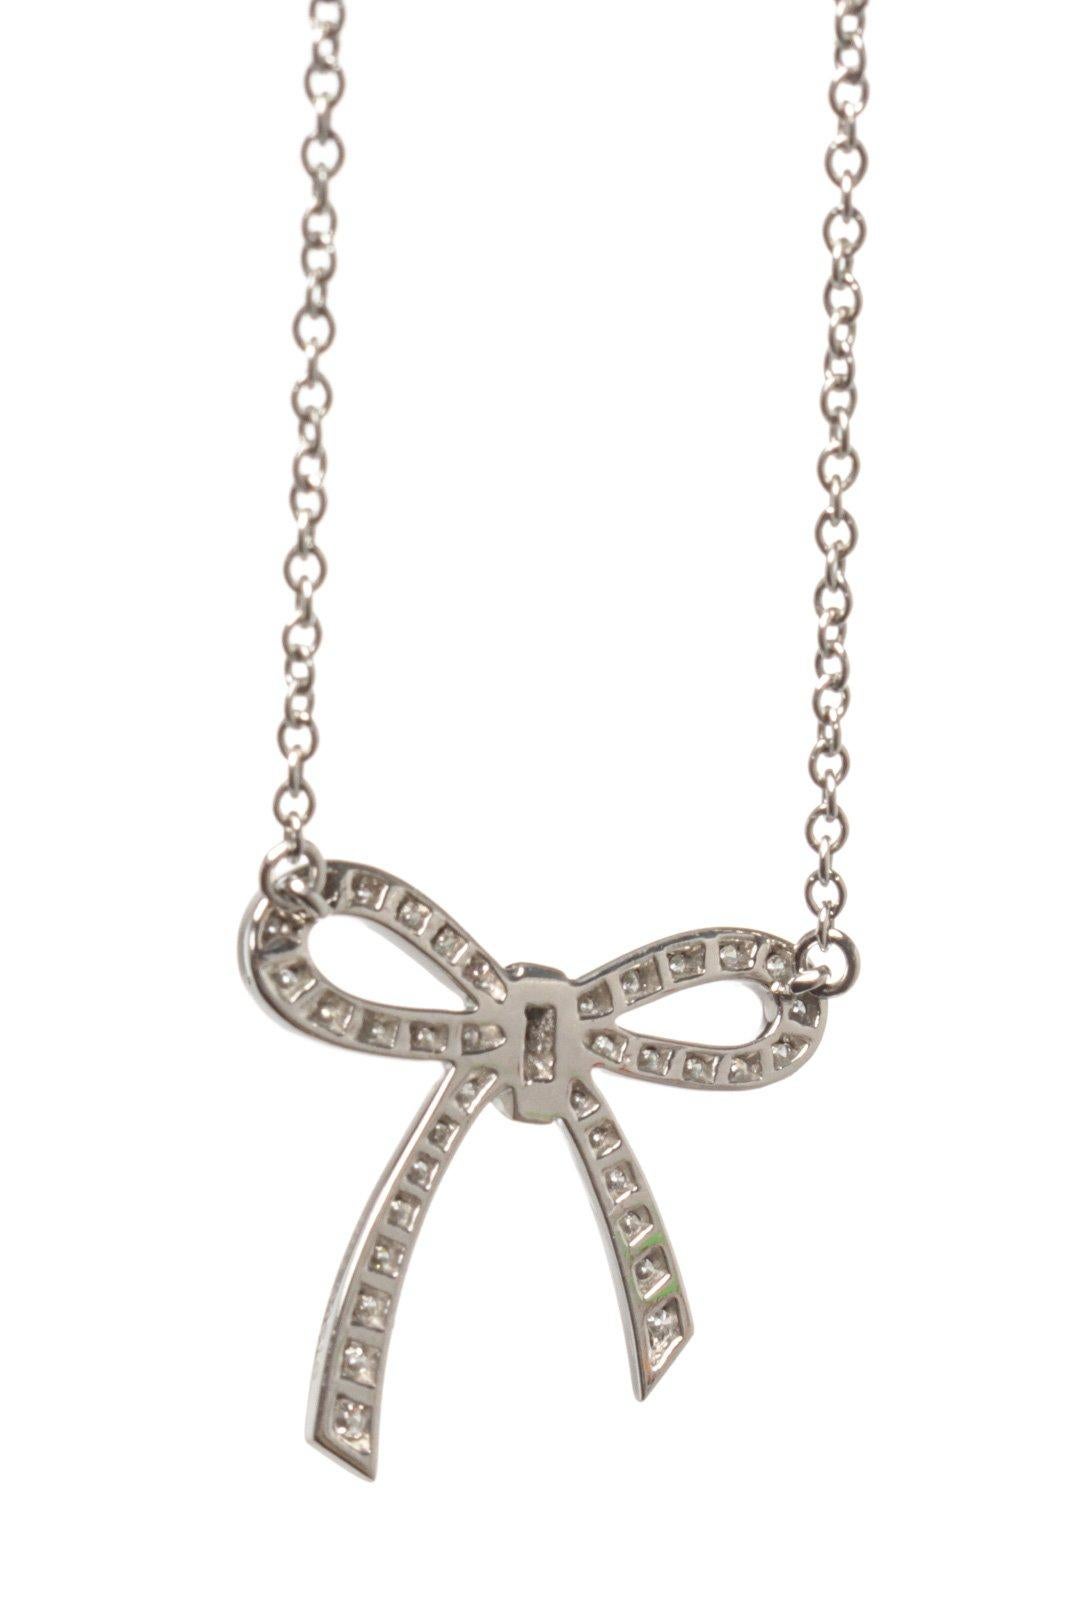 tiffany's bow necklace